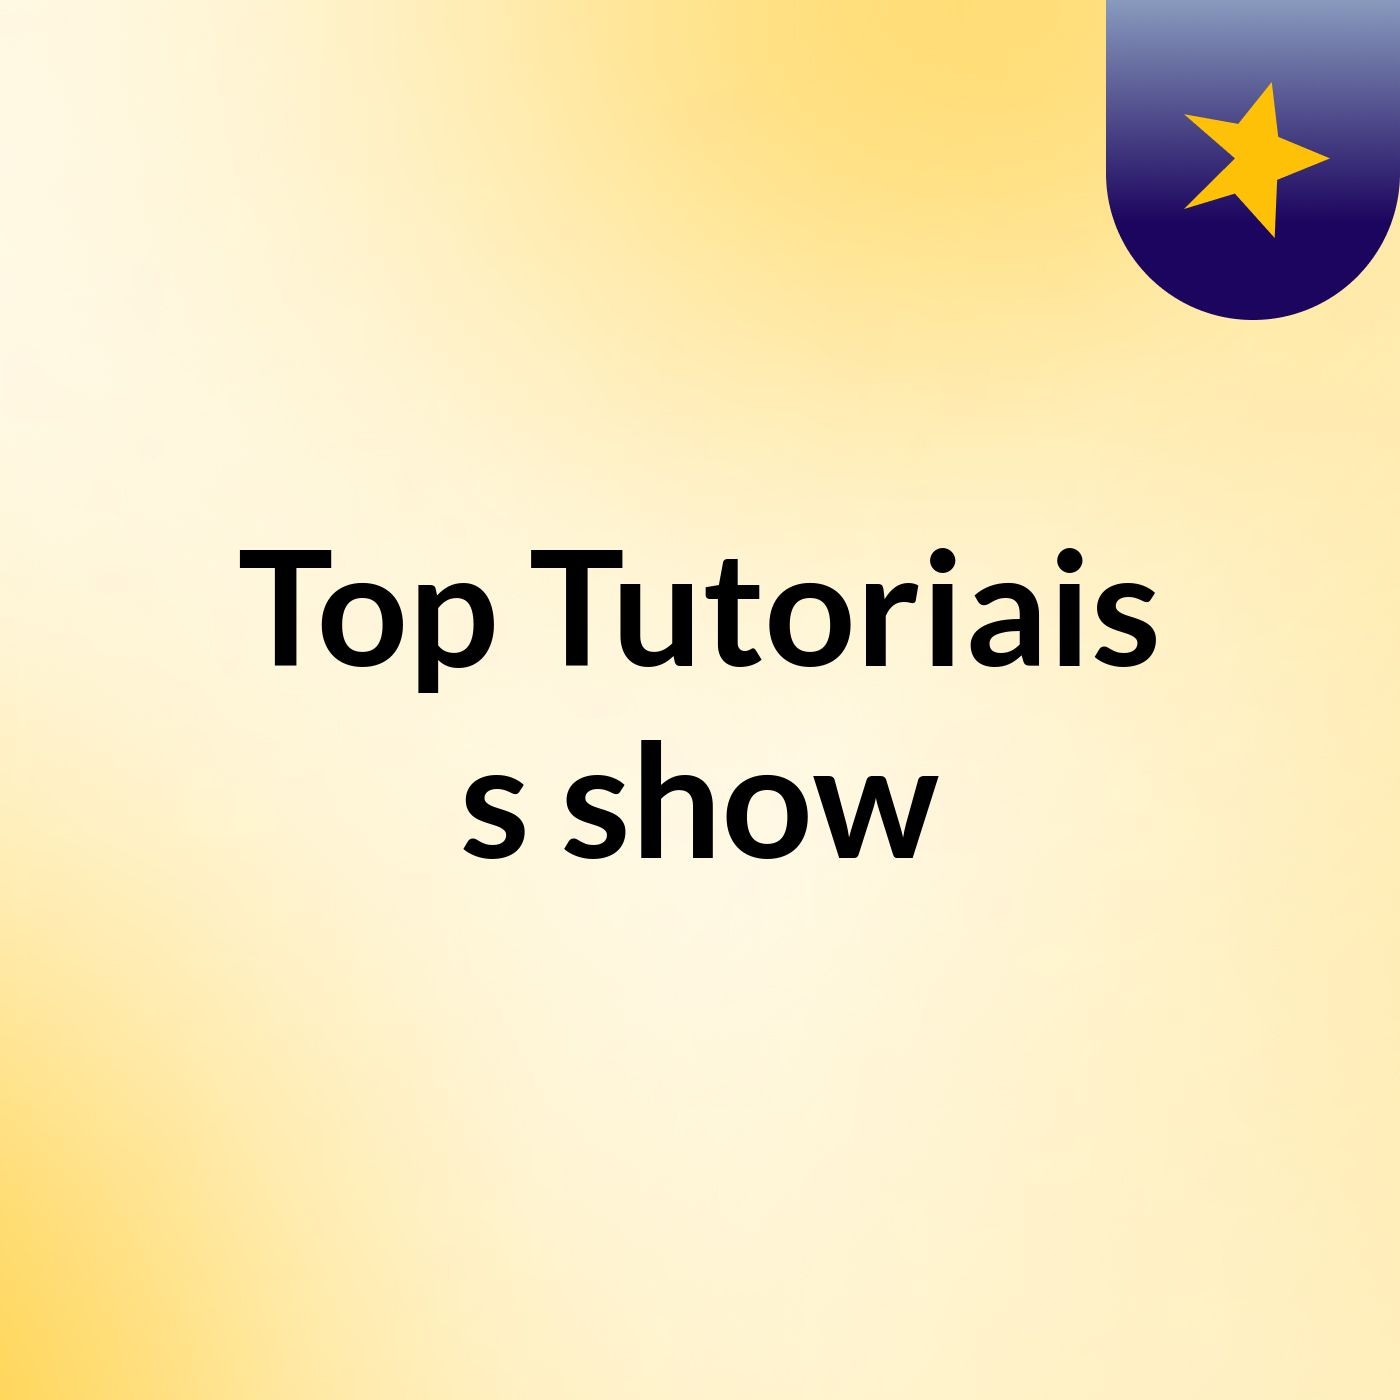 Top Tutoriais's show